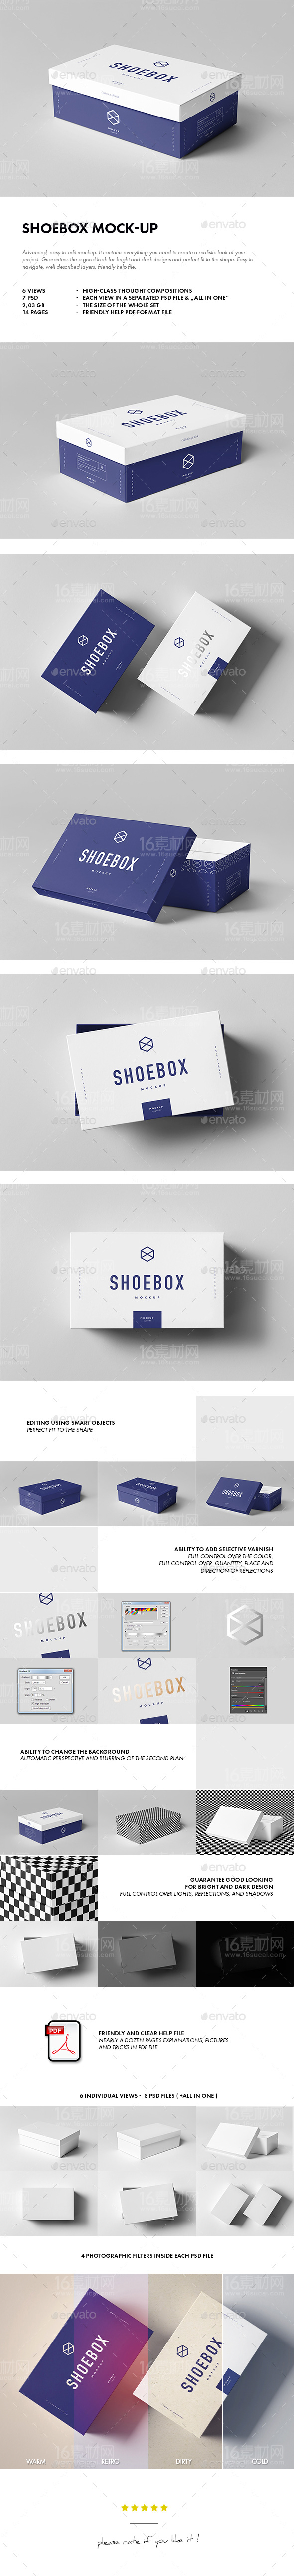 image-preview-Shoebox-Mock-up.jpg